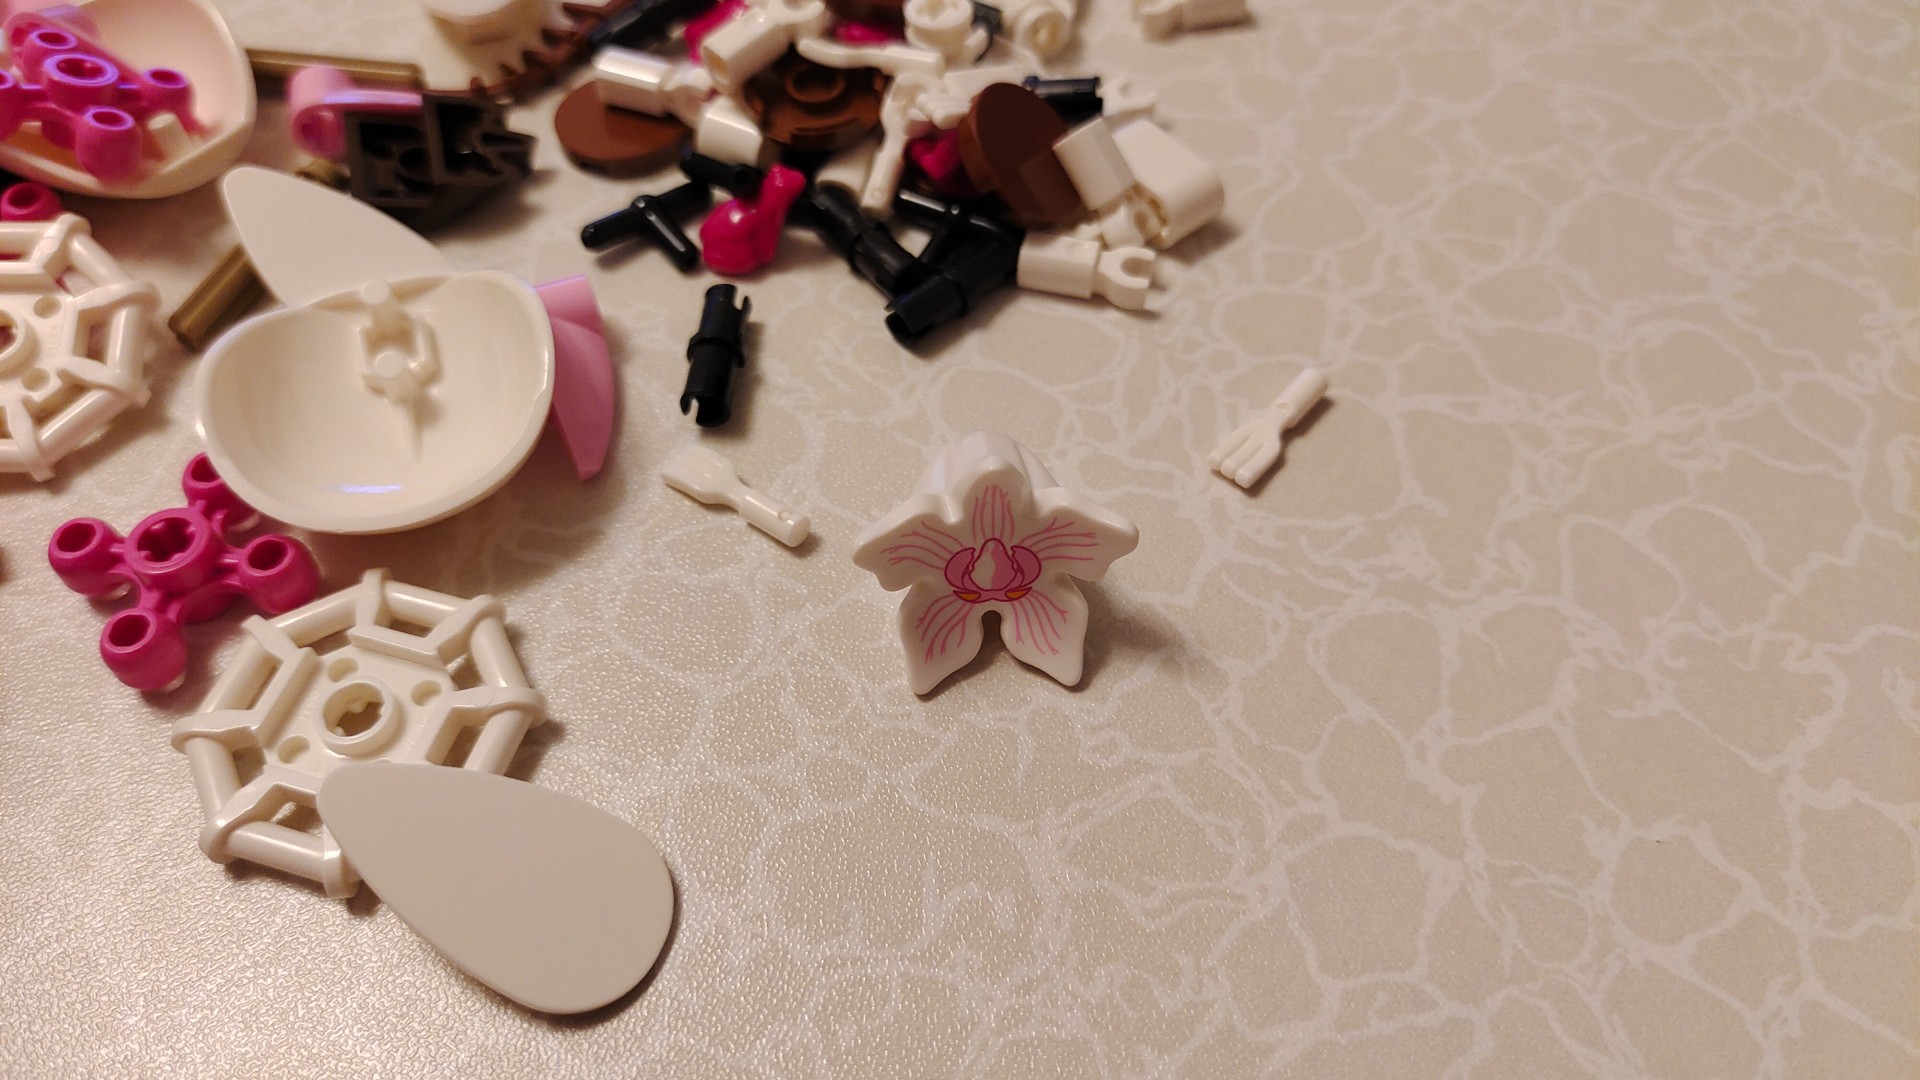 Lego Orchid 10311_selección de piezas de Lego rosas y blancas.